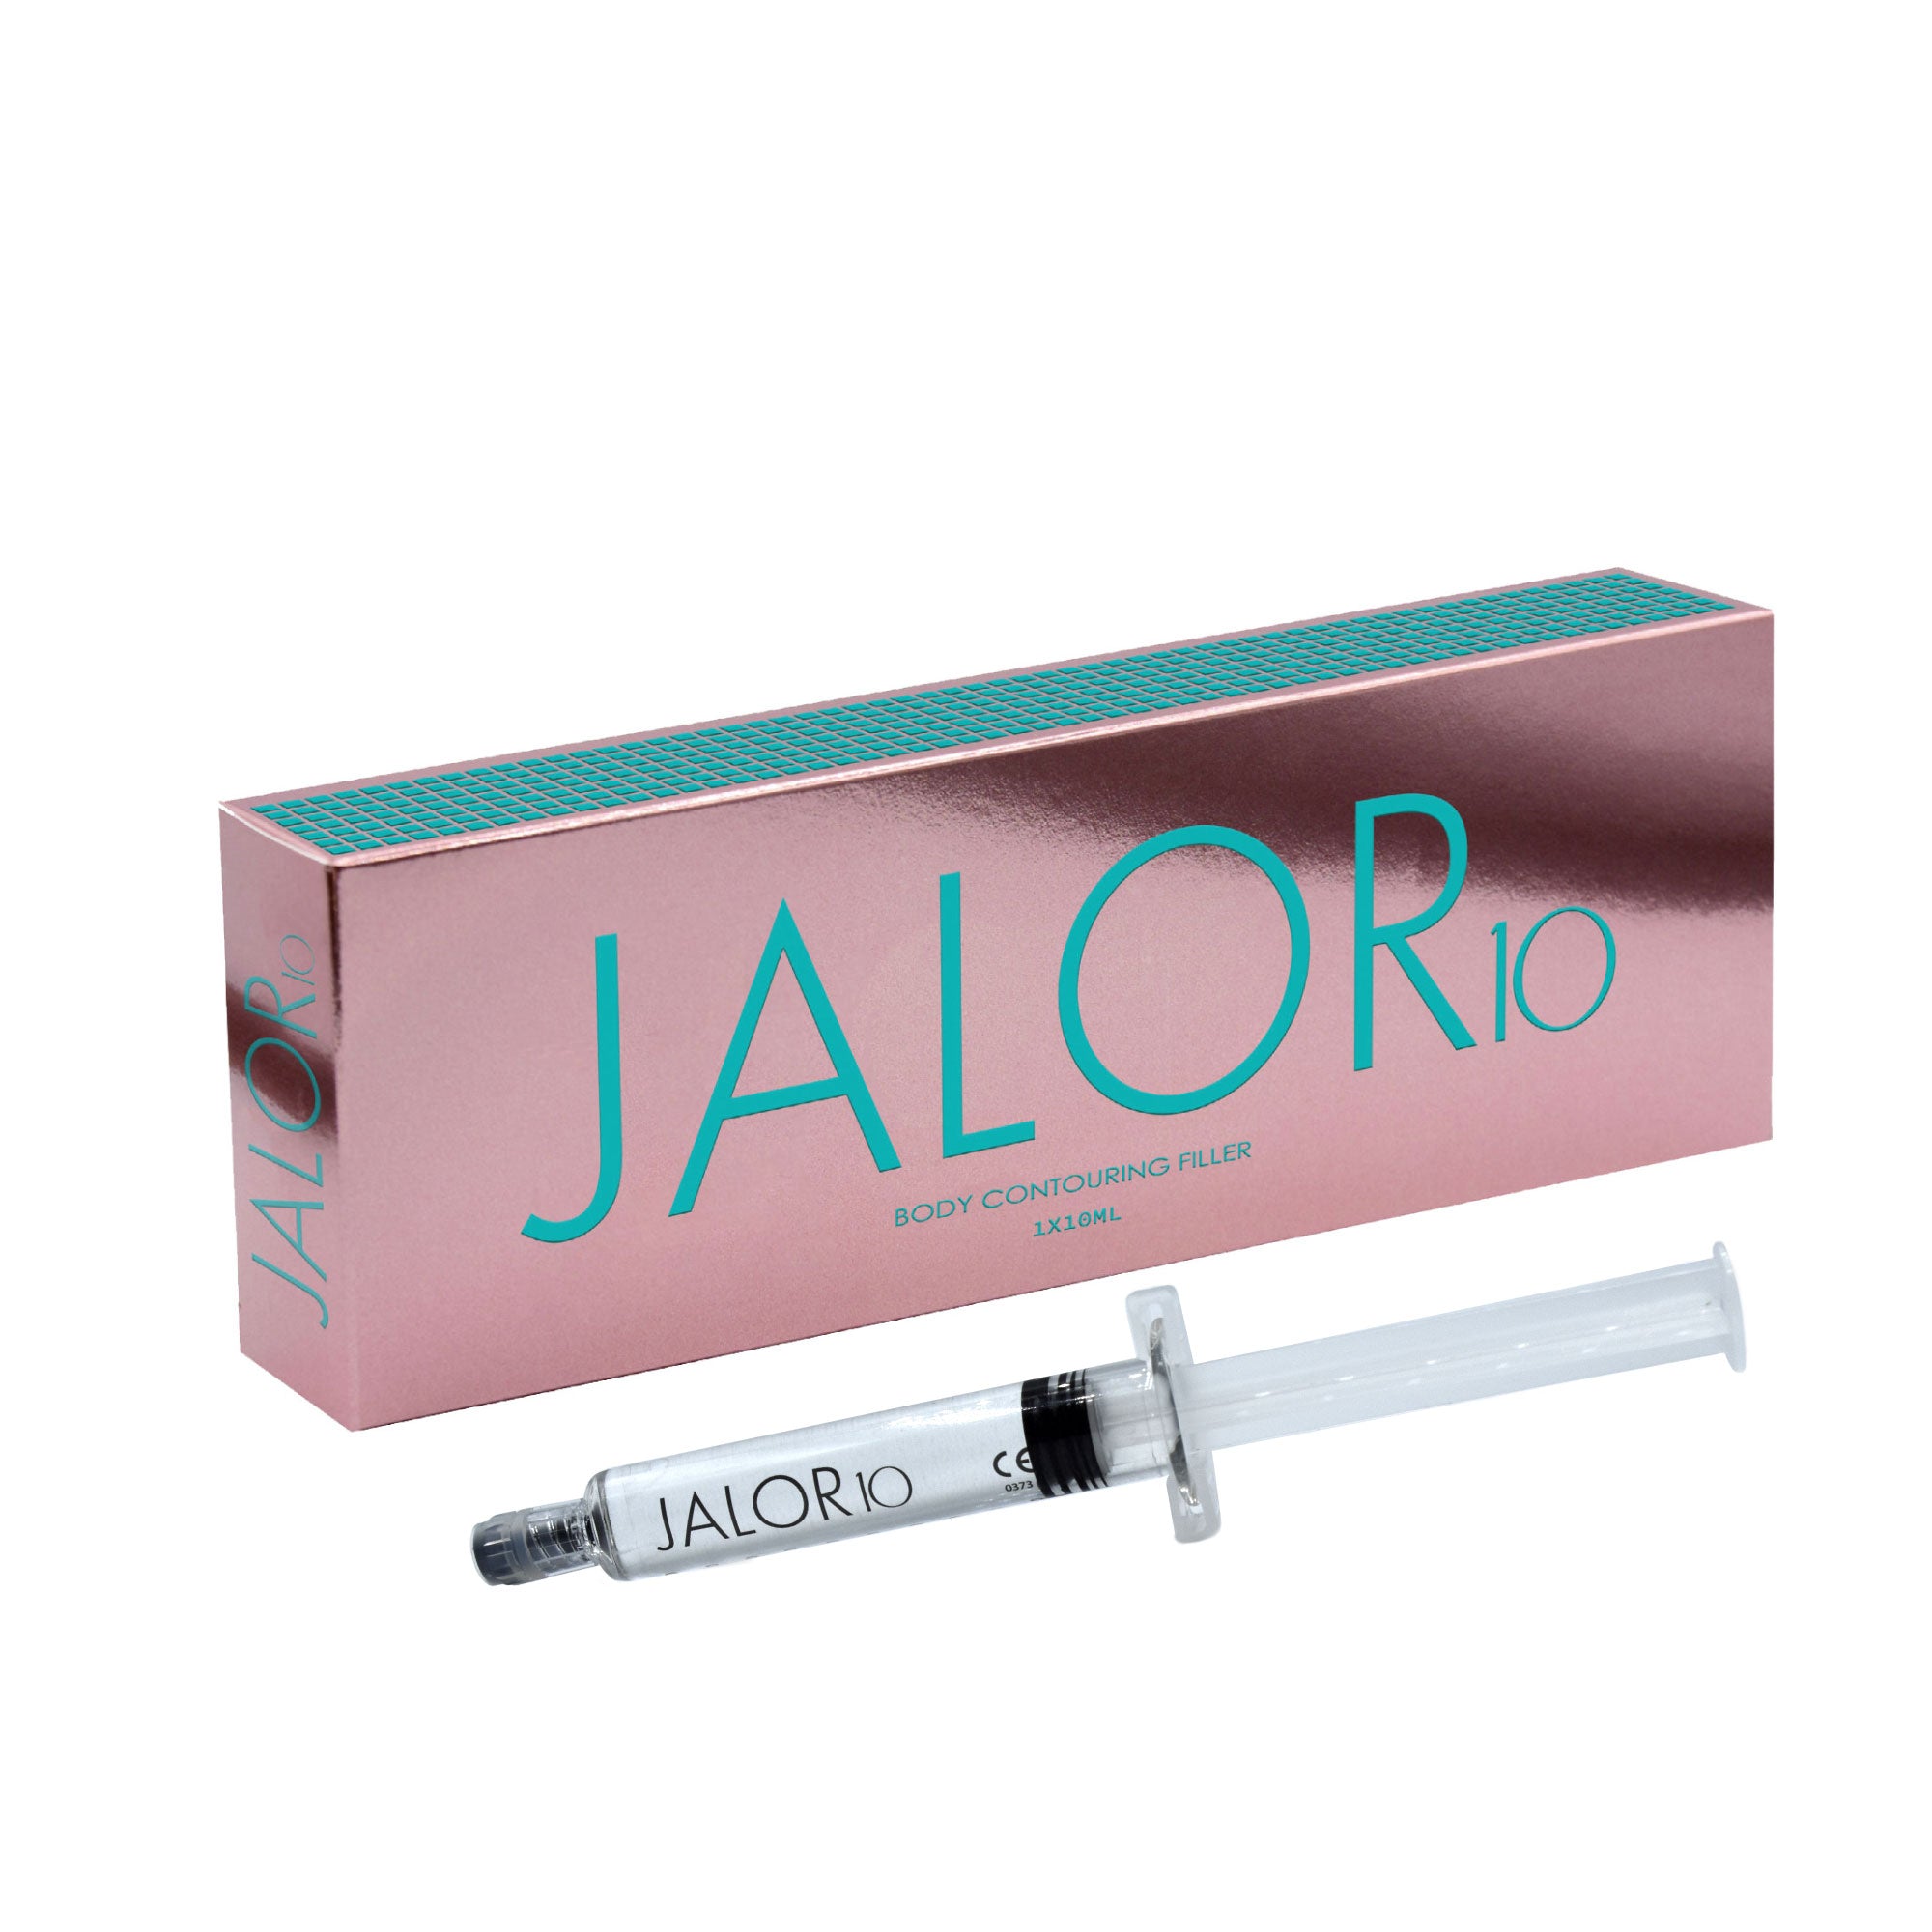 JALOR 10 - Filler Ricostruzione Profili Corpo